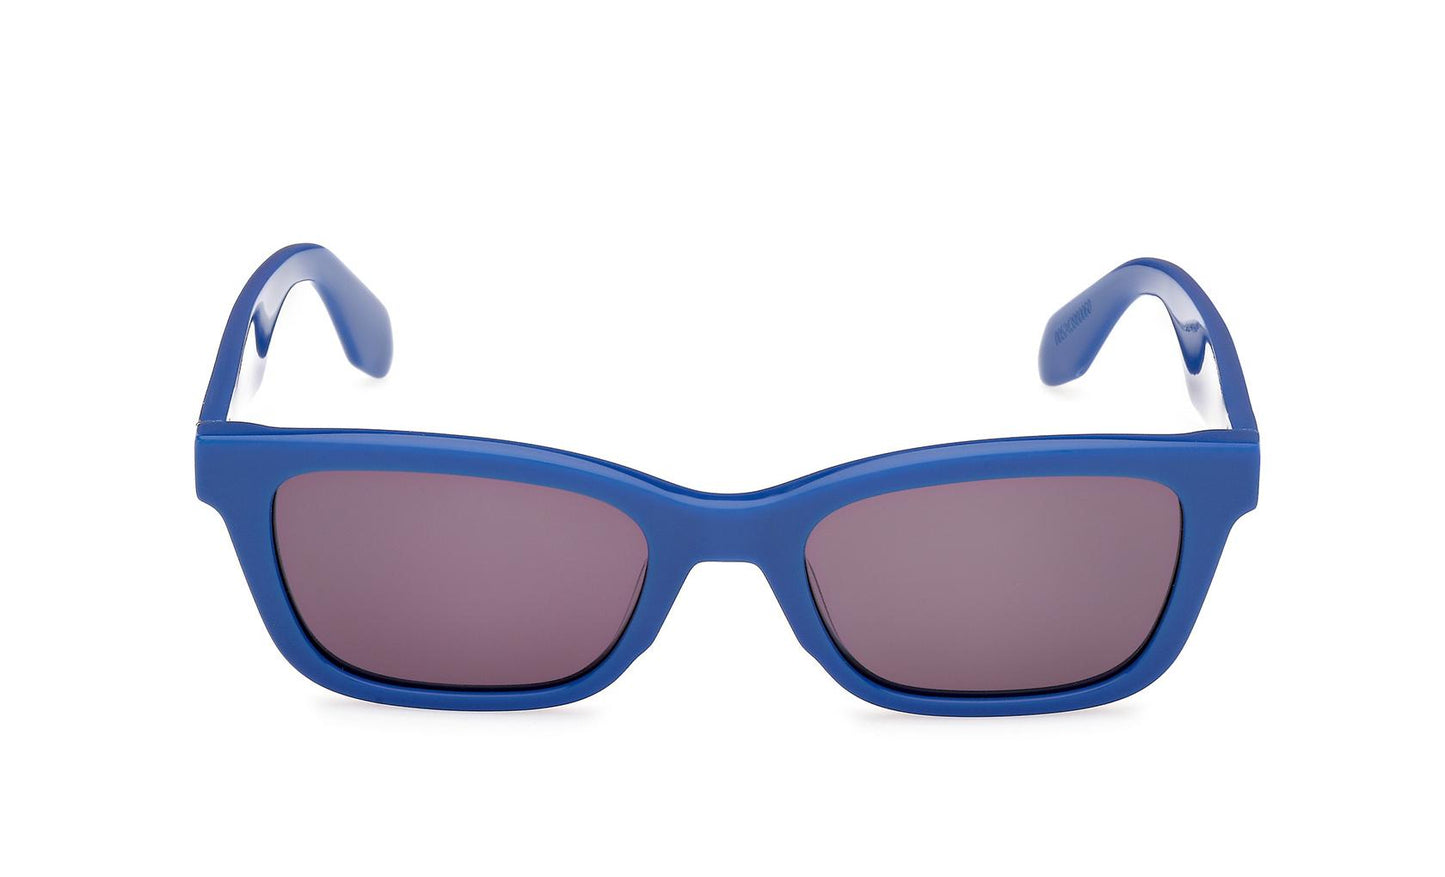 Adidas Originals Sunglasses OR0117 90A